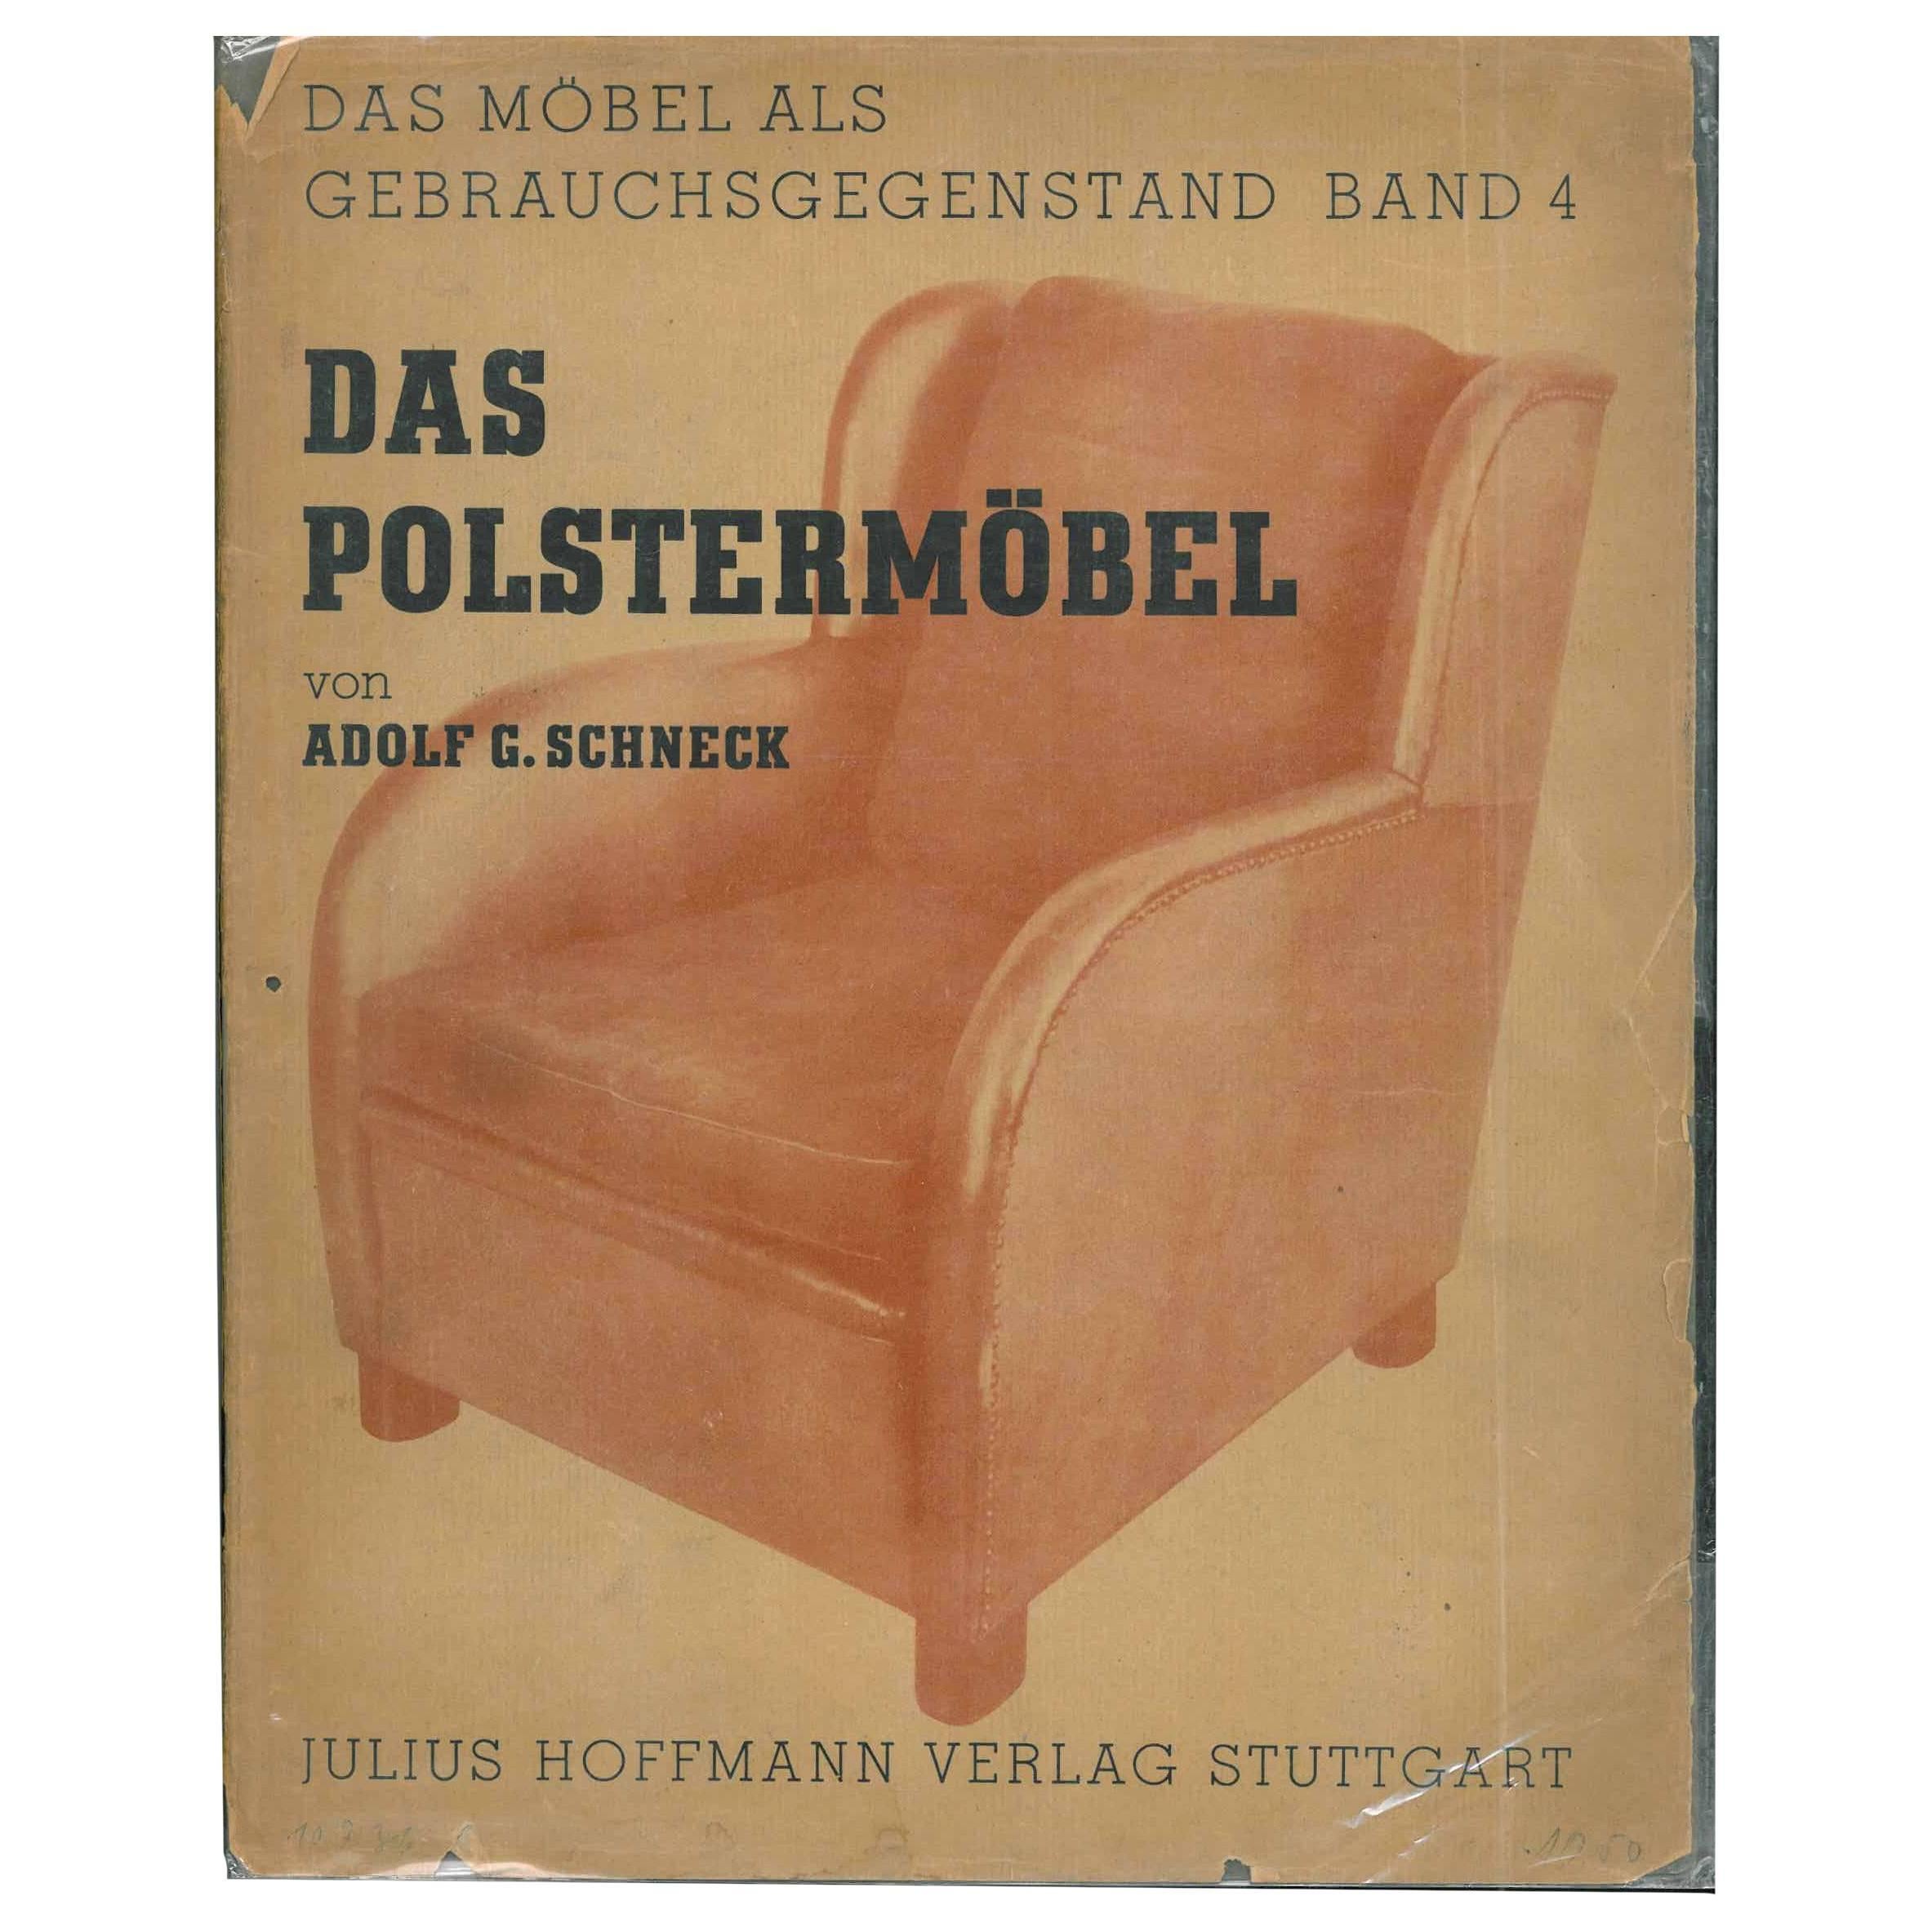 "DAS POLSTERMOBEL" (Upholstered Furniture) von Adolf Schneck Book